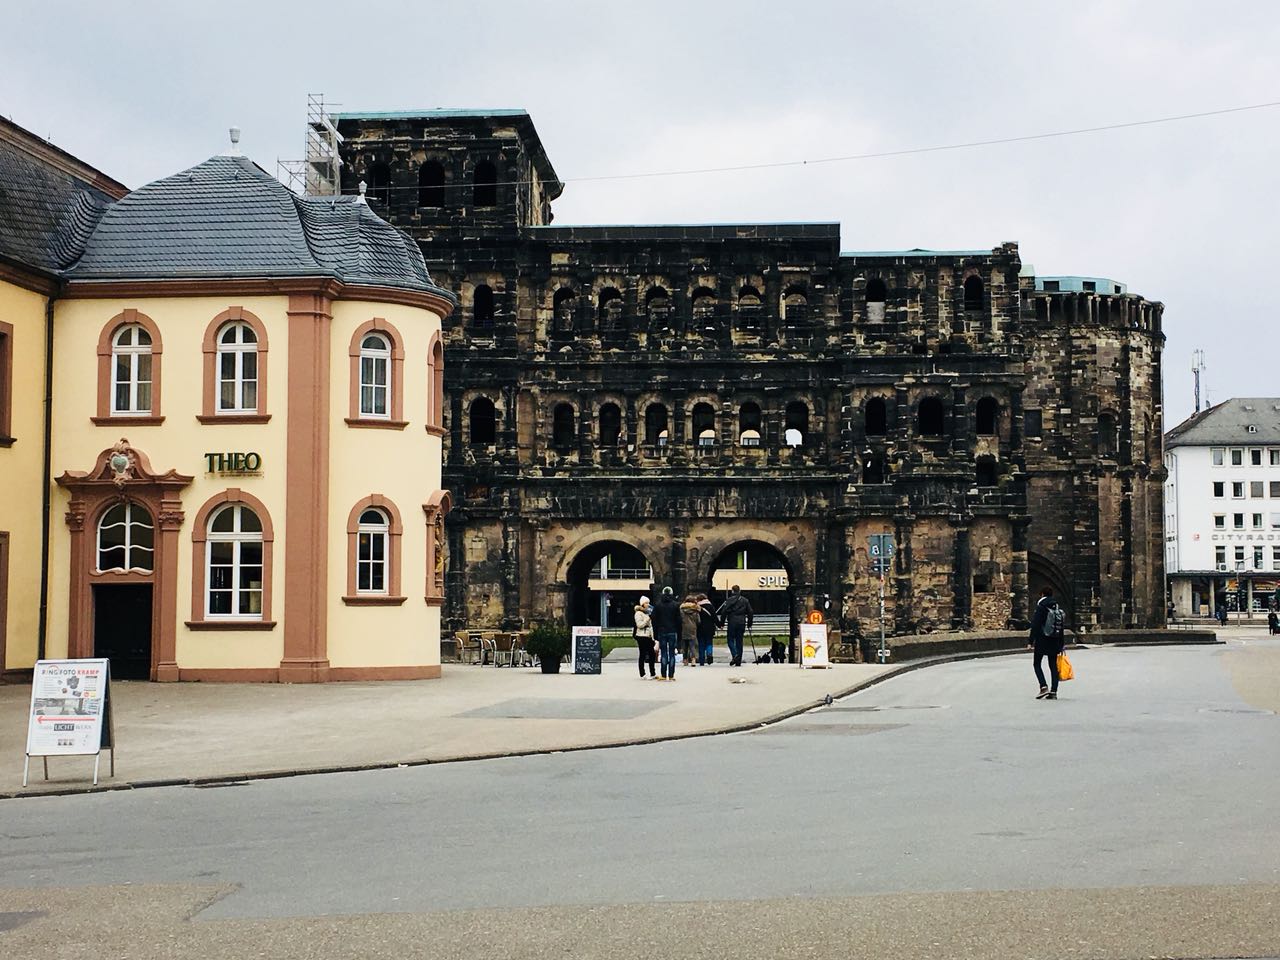 Sehenswürdigkeiten in Trier: Porta Nigra – Augustinianum Trier 2018